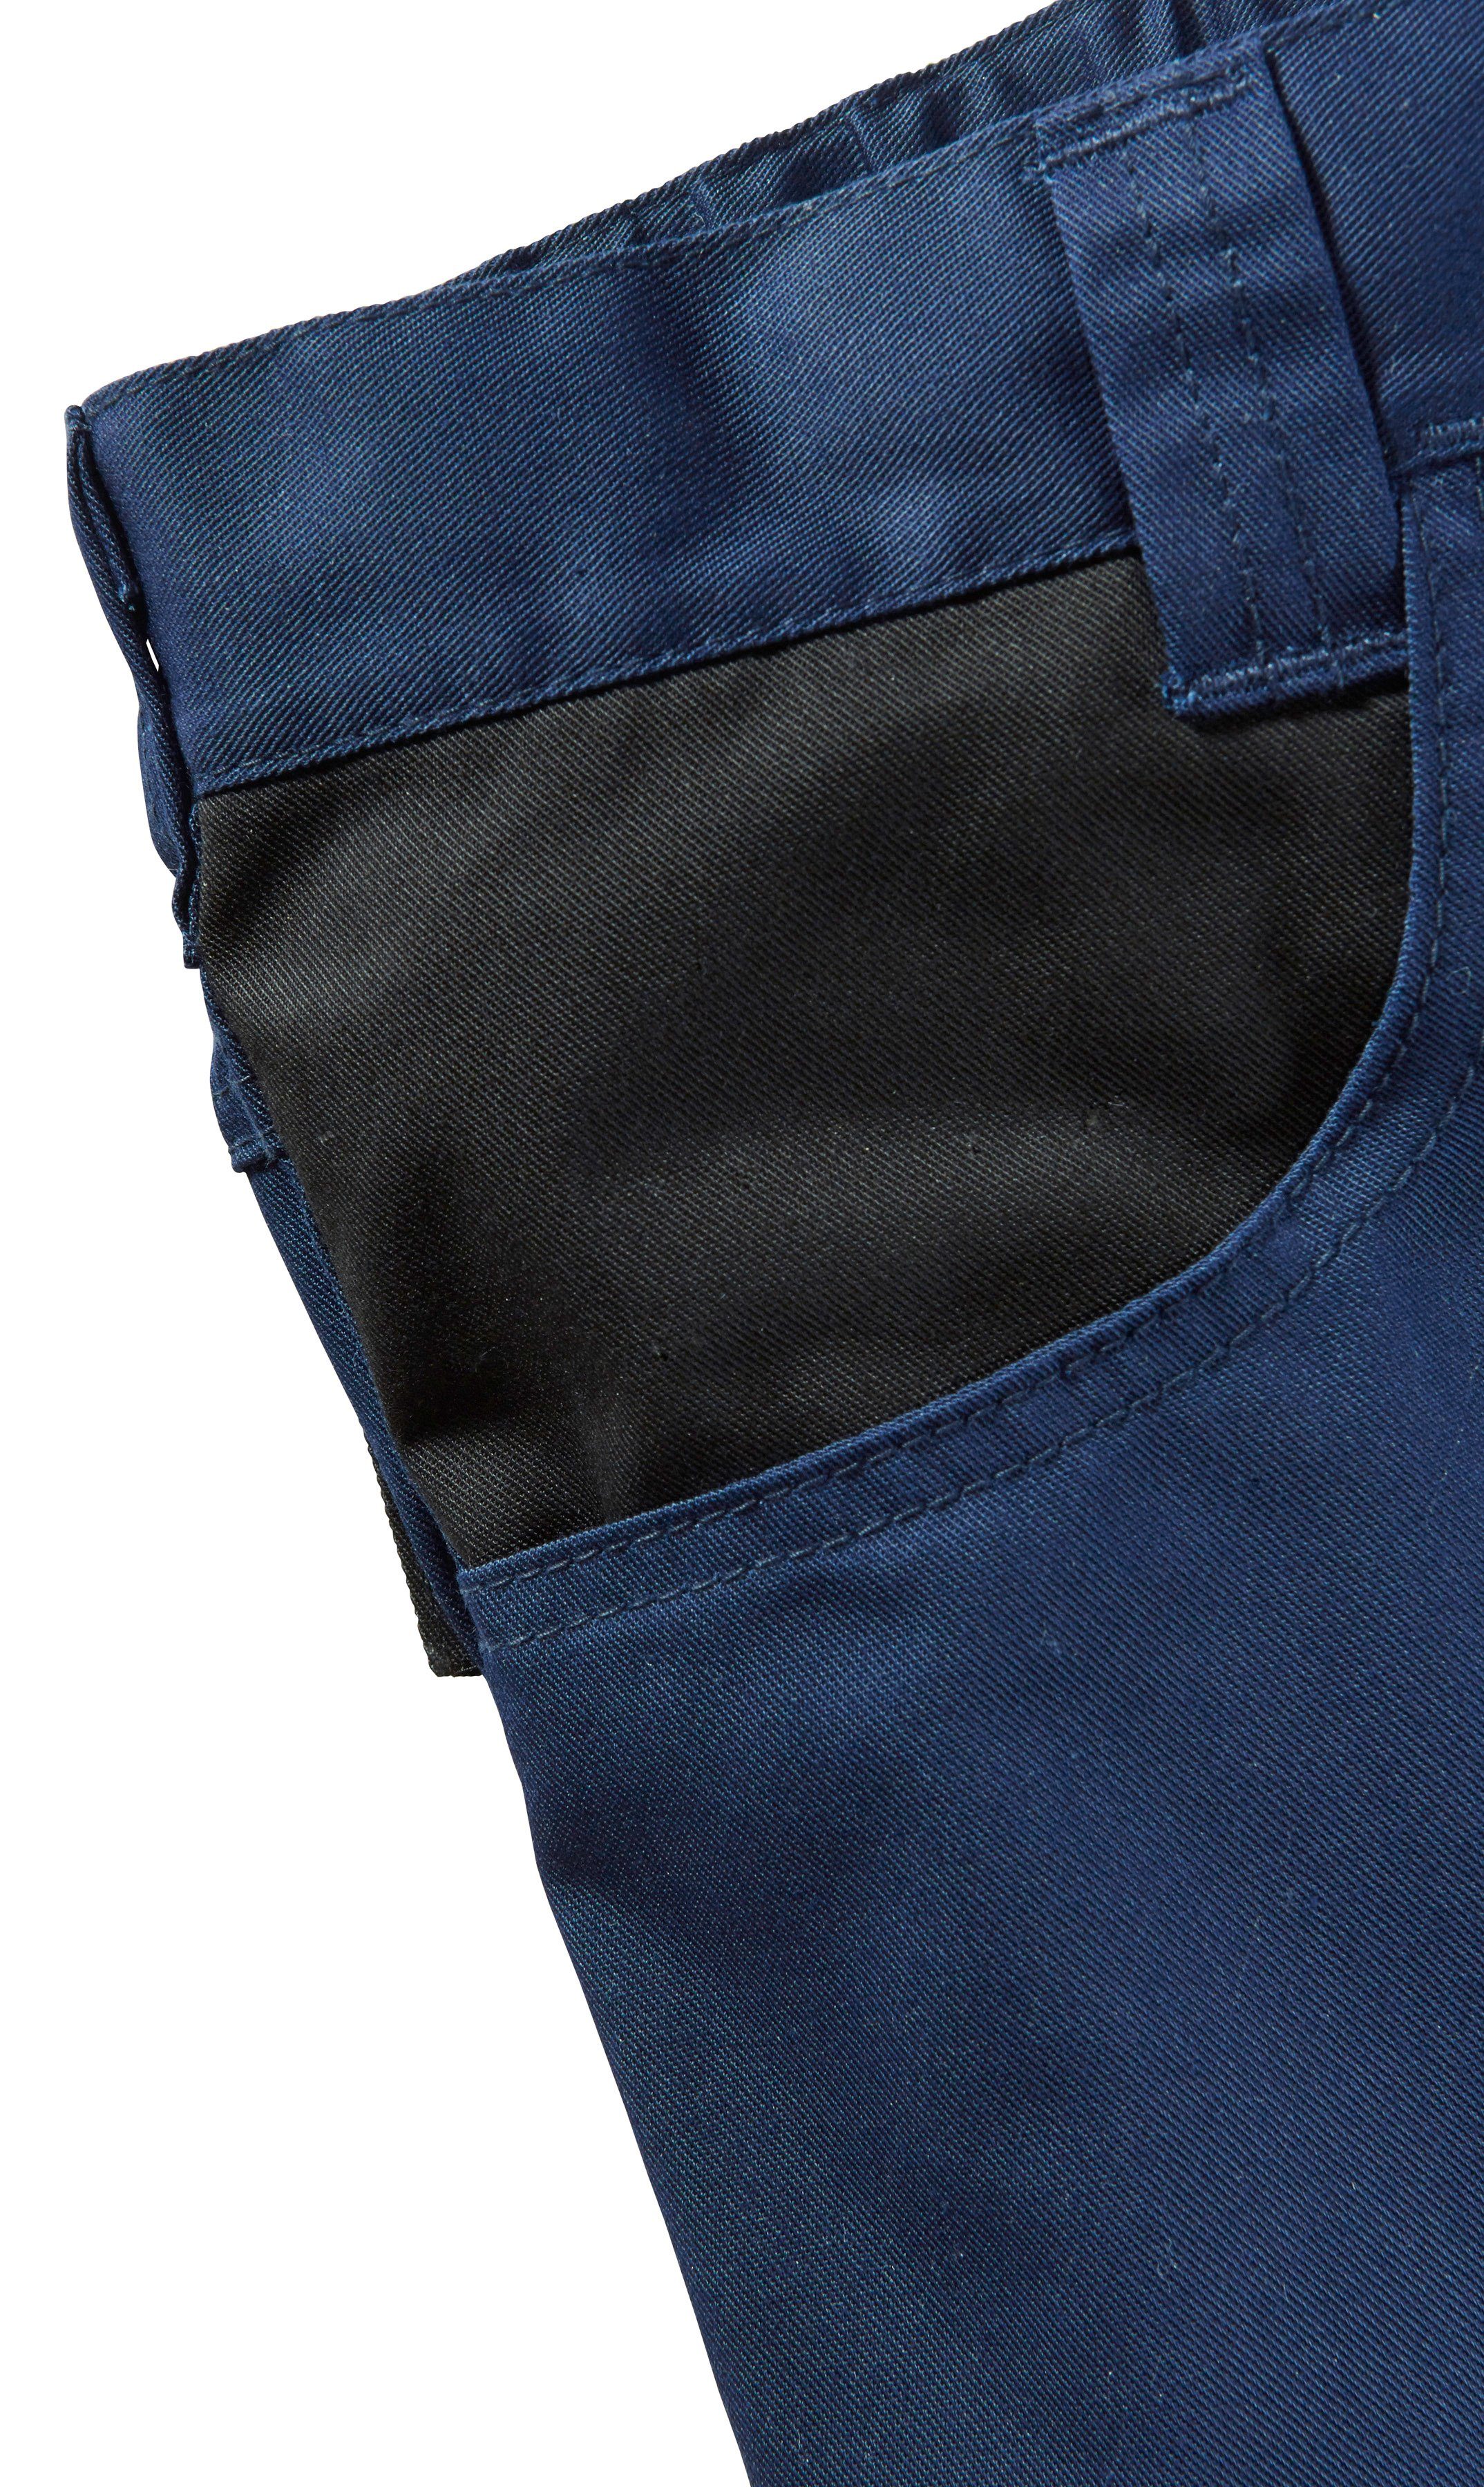 more Arbeitsshorts dunkelblau-schwarz mar mit safety& Pull Reflexeinsatz